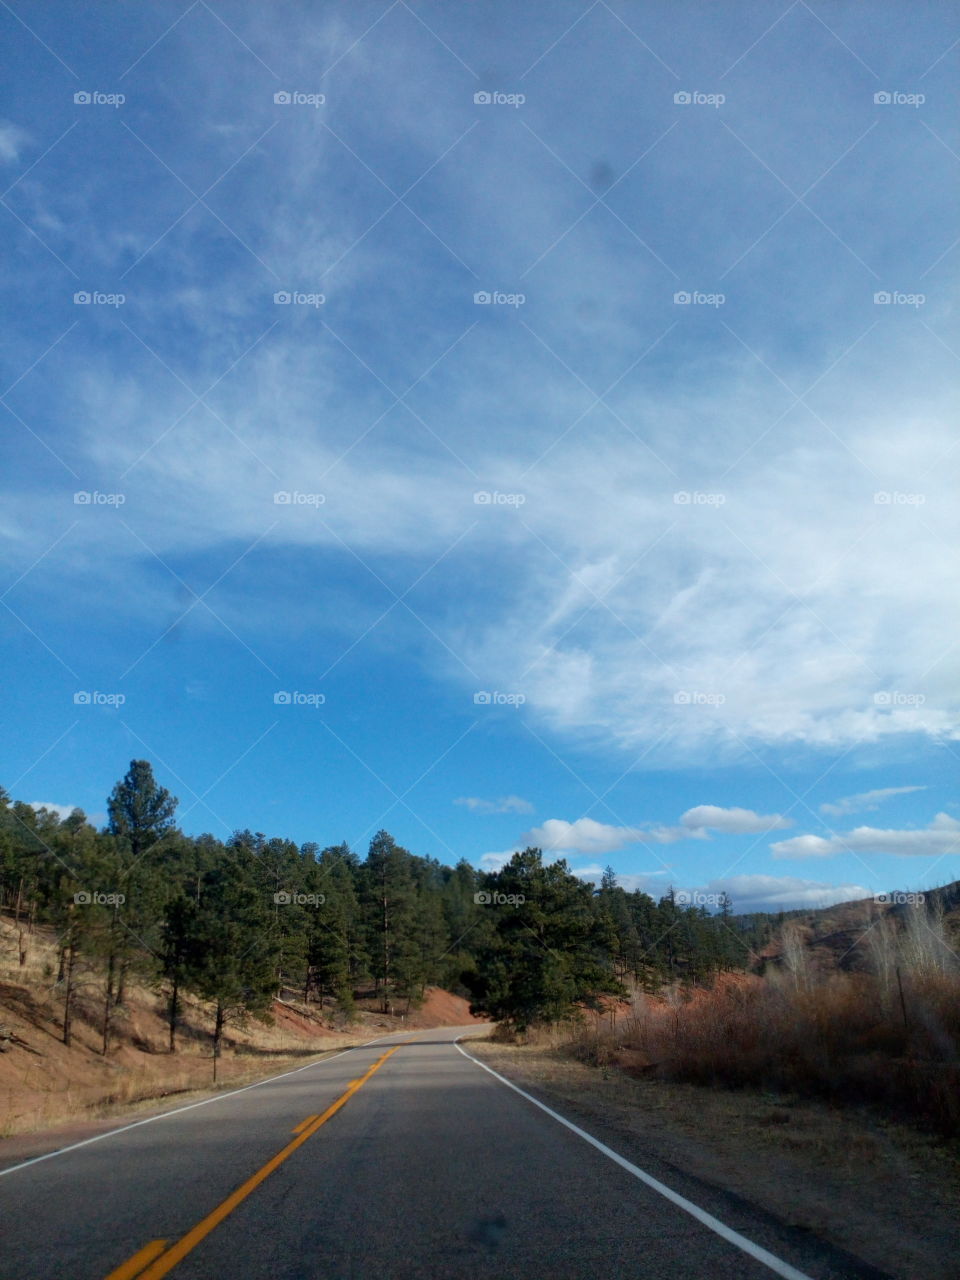 Mountain road scene in Colorado